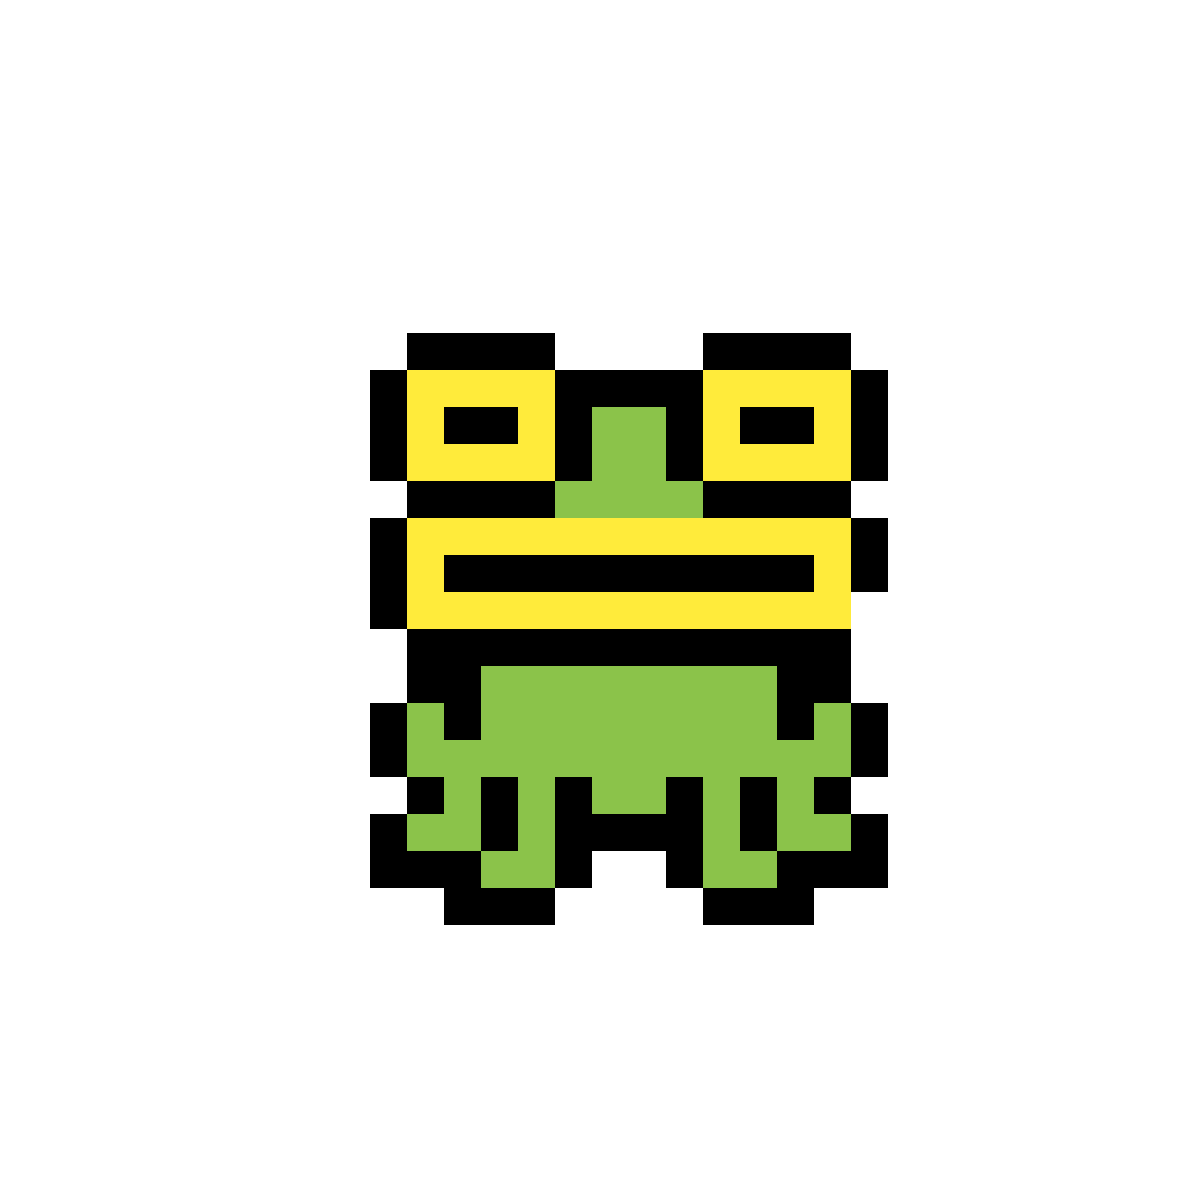 Размер картинки 512 512 пикселей. Pixel лягушка 8x8. Пиксельные лягушки. Пиксельная жаба. Лягушка пиксель арт.